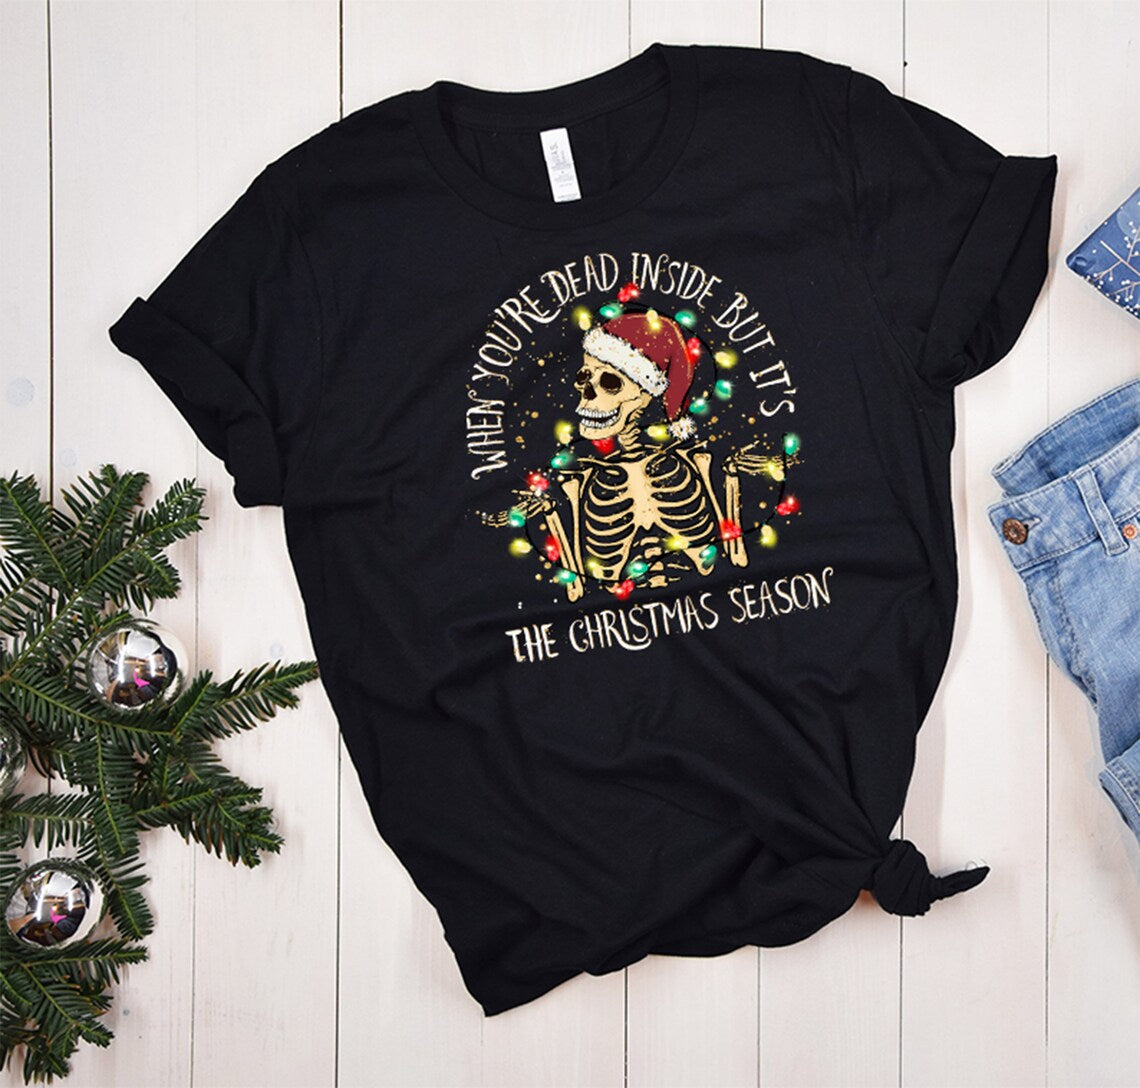 When you're dead inside but it's the Christmas season Skeleton Tshirt,Funny Christmas Tshirt,Dead Inside Christmas Gift,Funny Christmas Gift